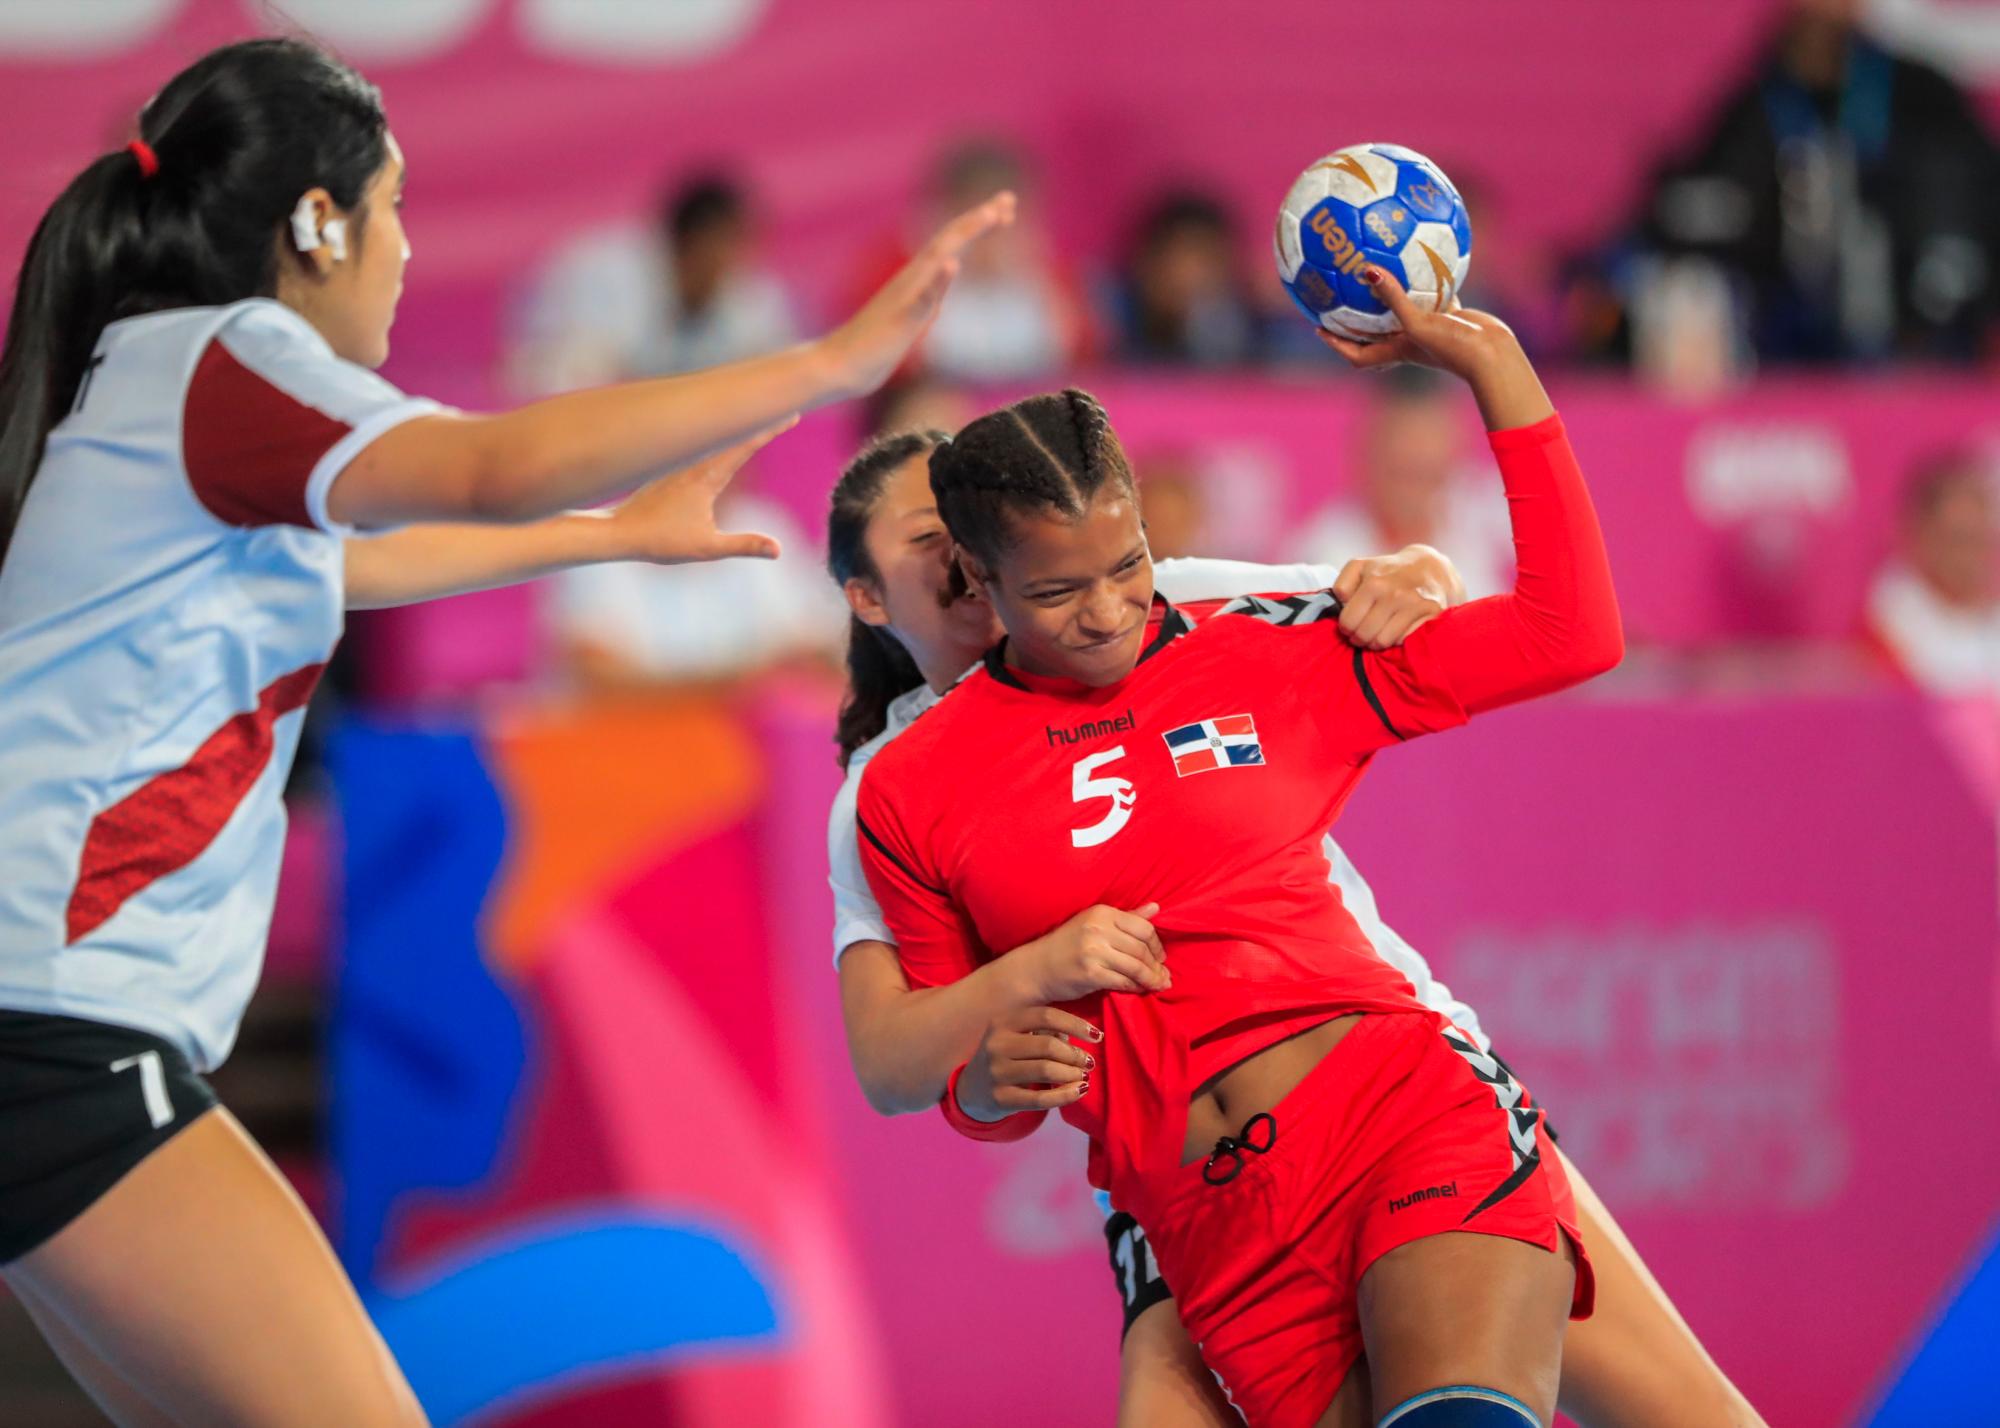 Danilza Liranzo del equipo de balonmano de República Dominicana, derecha, y Kelly Servat durante la competencia en Villa Deportiva Nacional-Videna en los Juegos Panamericanos de Lima 2019.